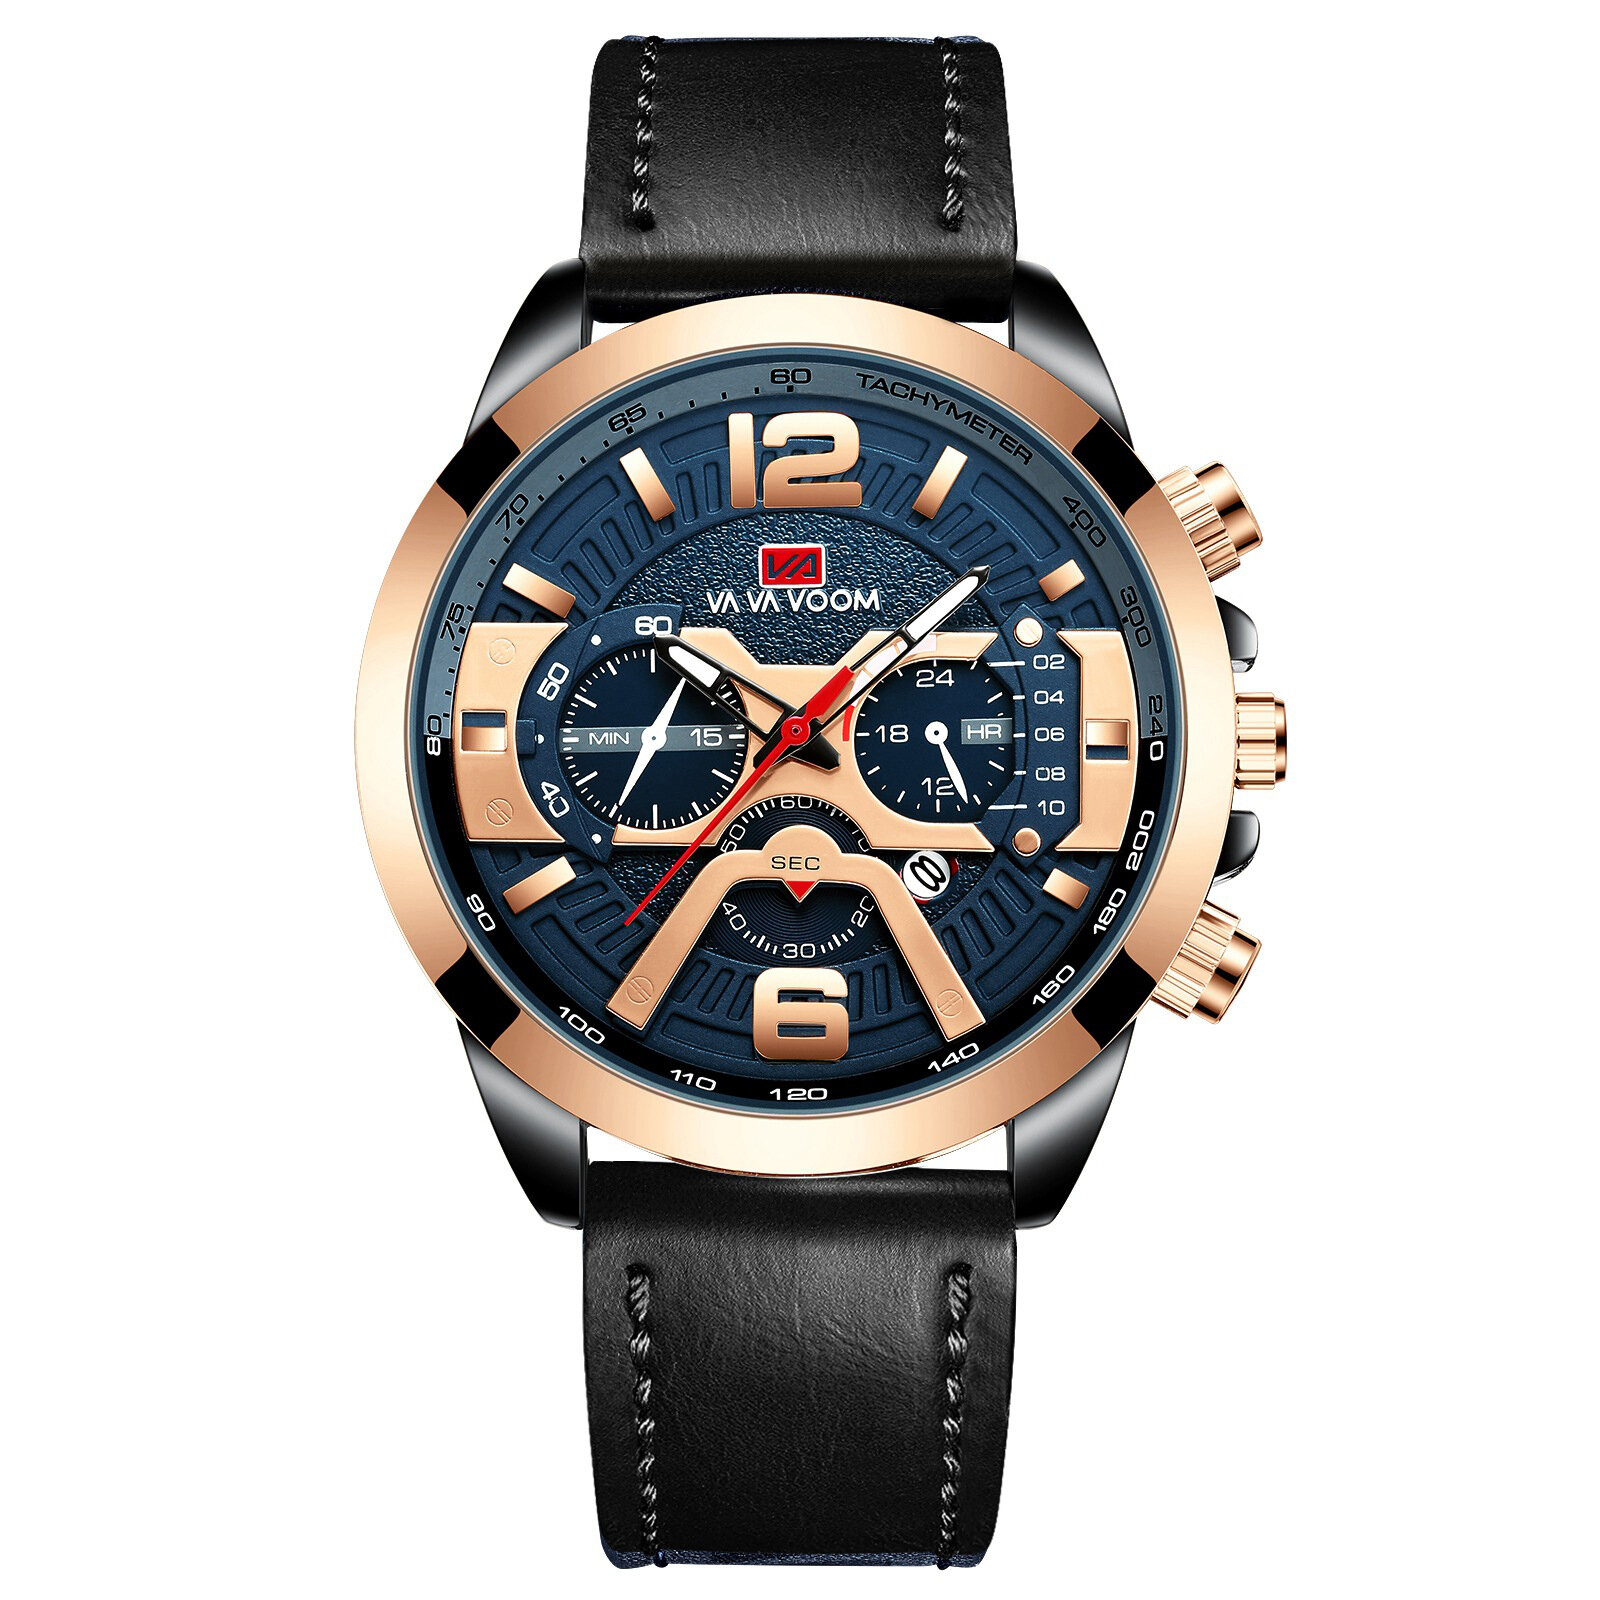 

VAVA VOOM VA-216 Fashion Men Watch Date Display 3ATM Waterproof Leather Strap Quartz Watch